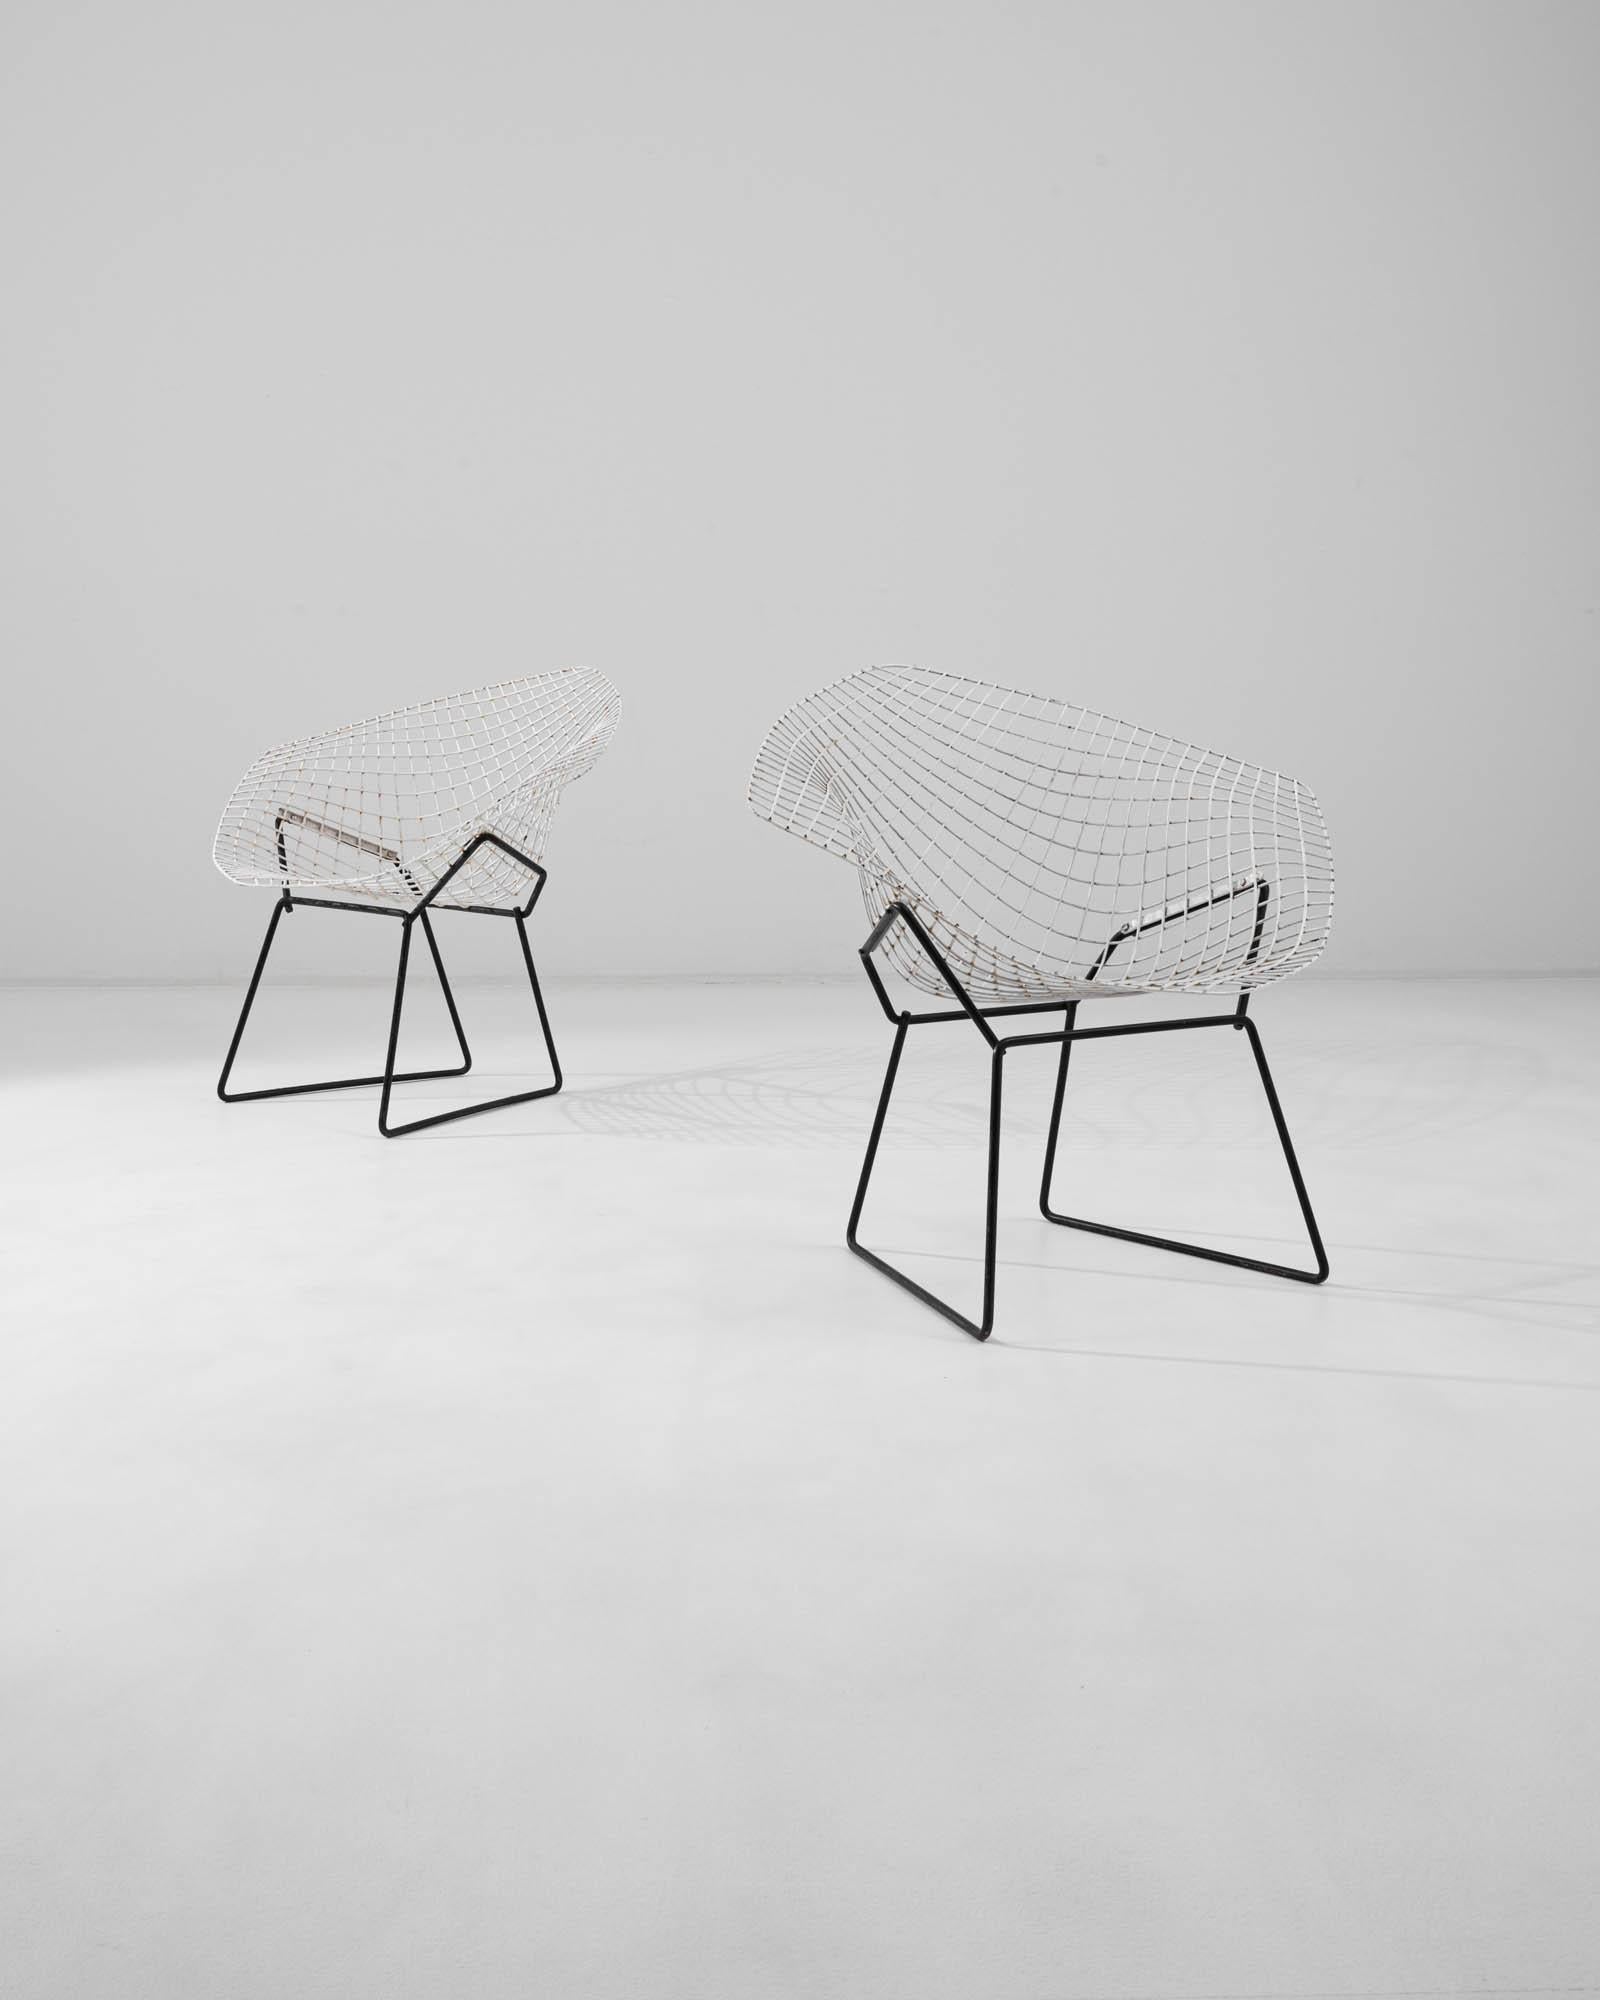 Paire de chaises en métal italiennes du 20e siècle créées par Harry Bertoia. Appelées 